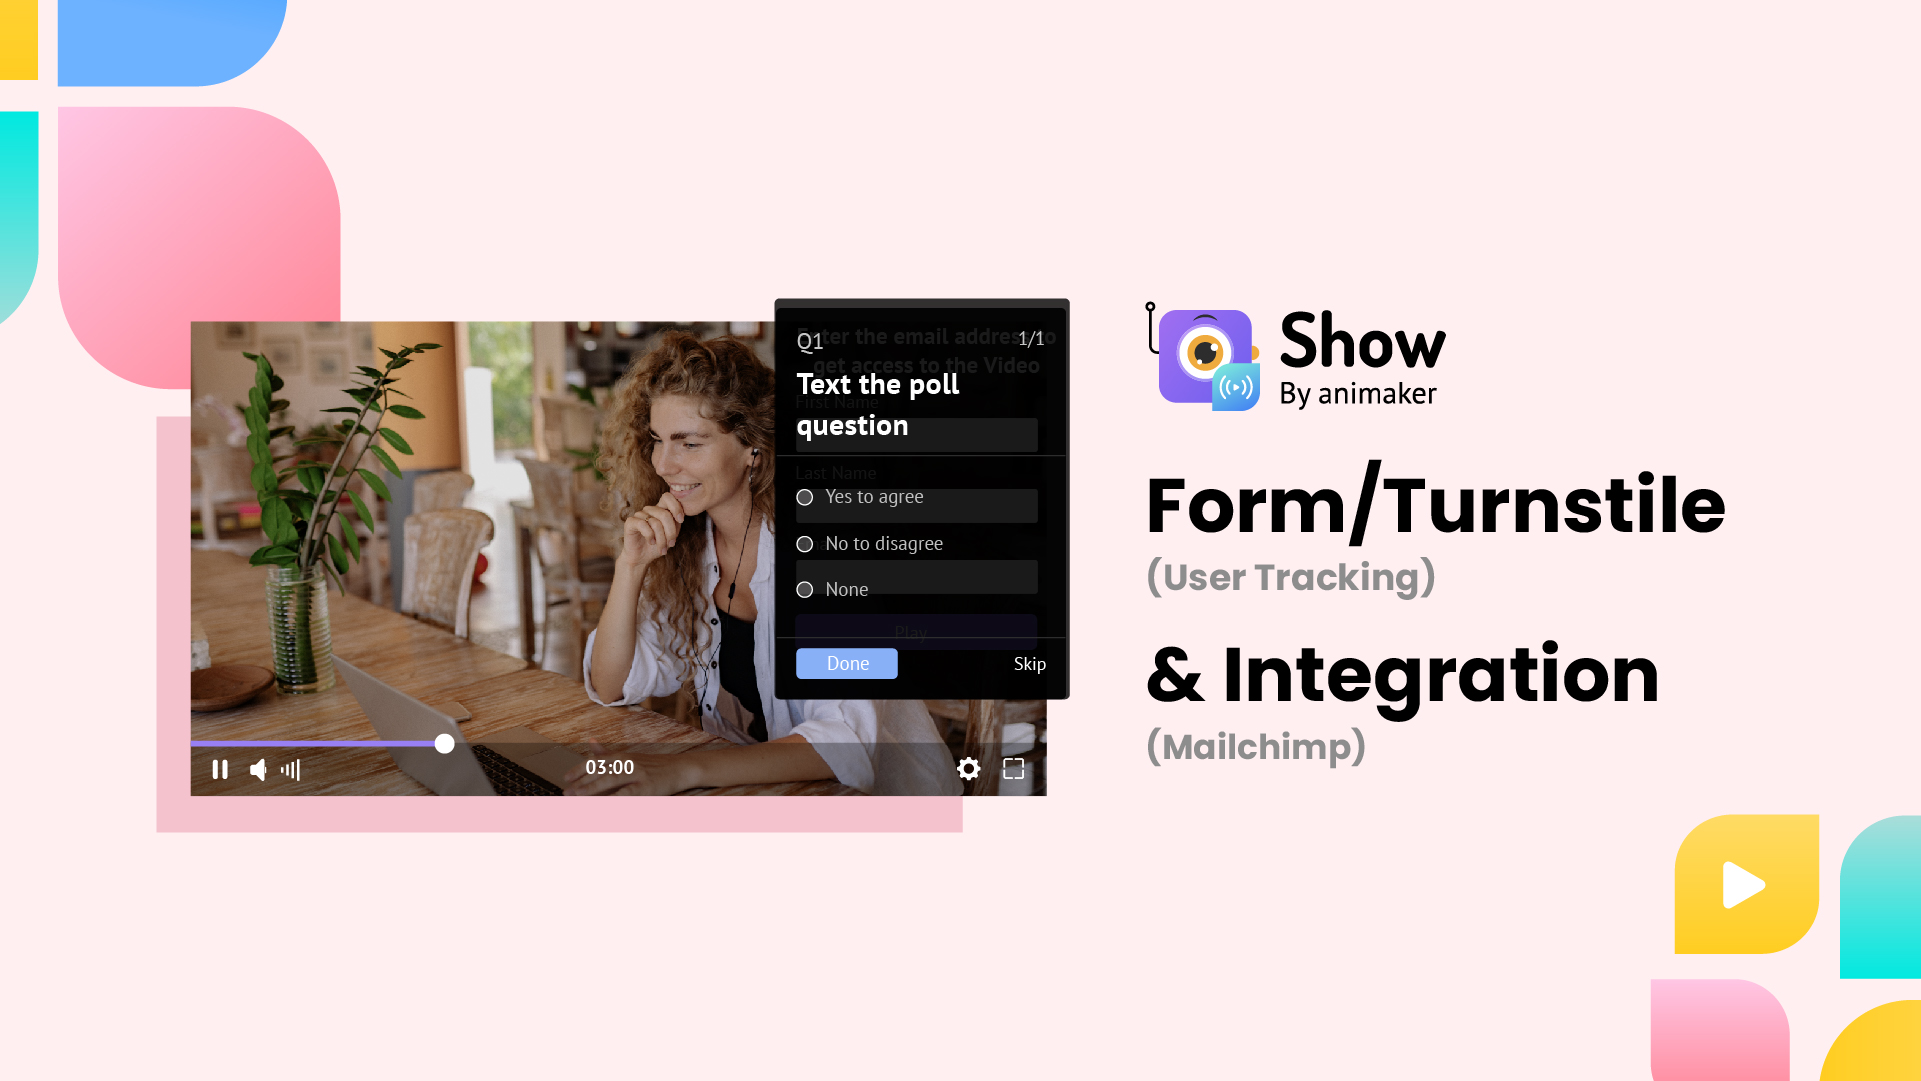 Turnstile form(user tracking) & Integration(Mailchimp)